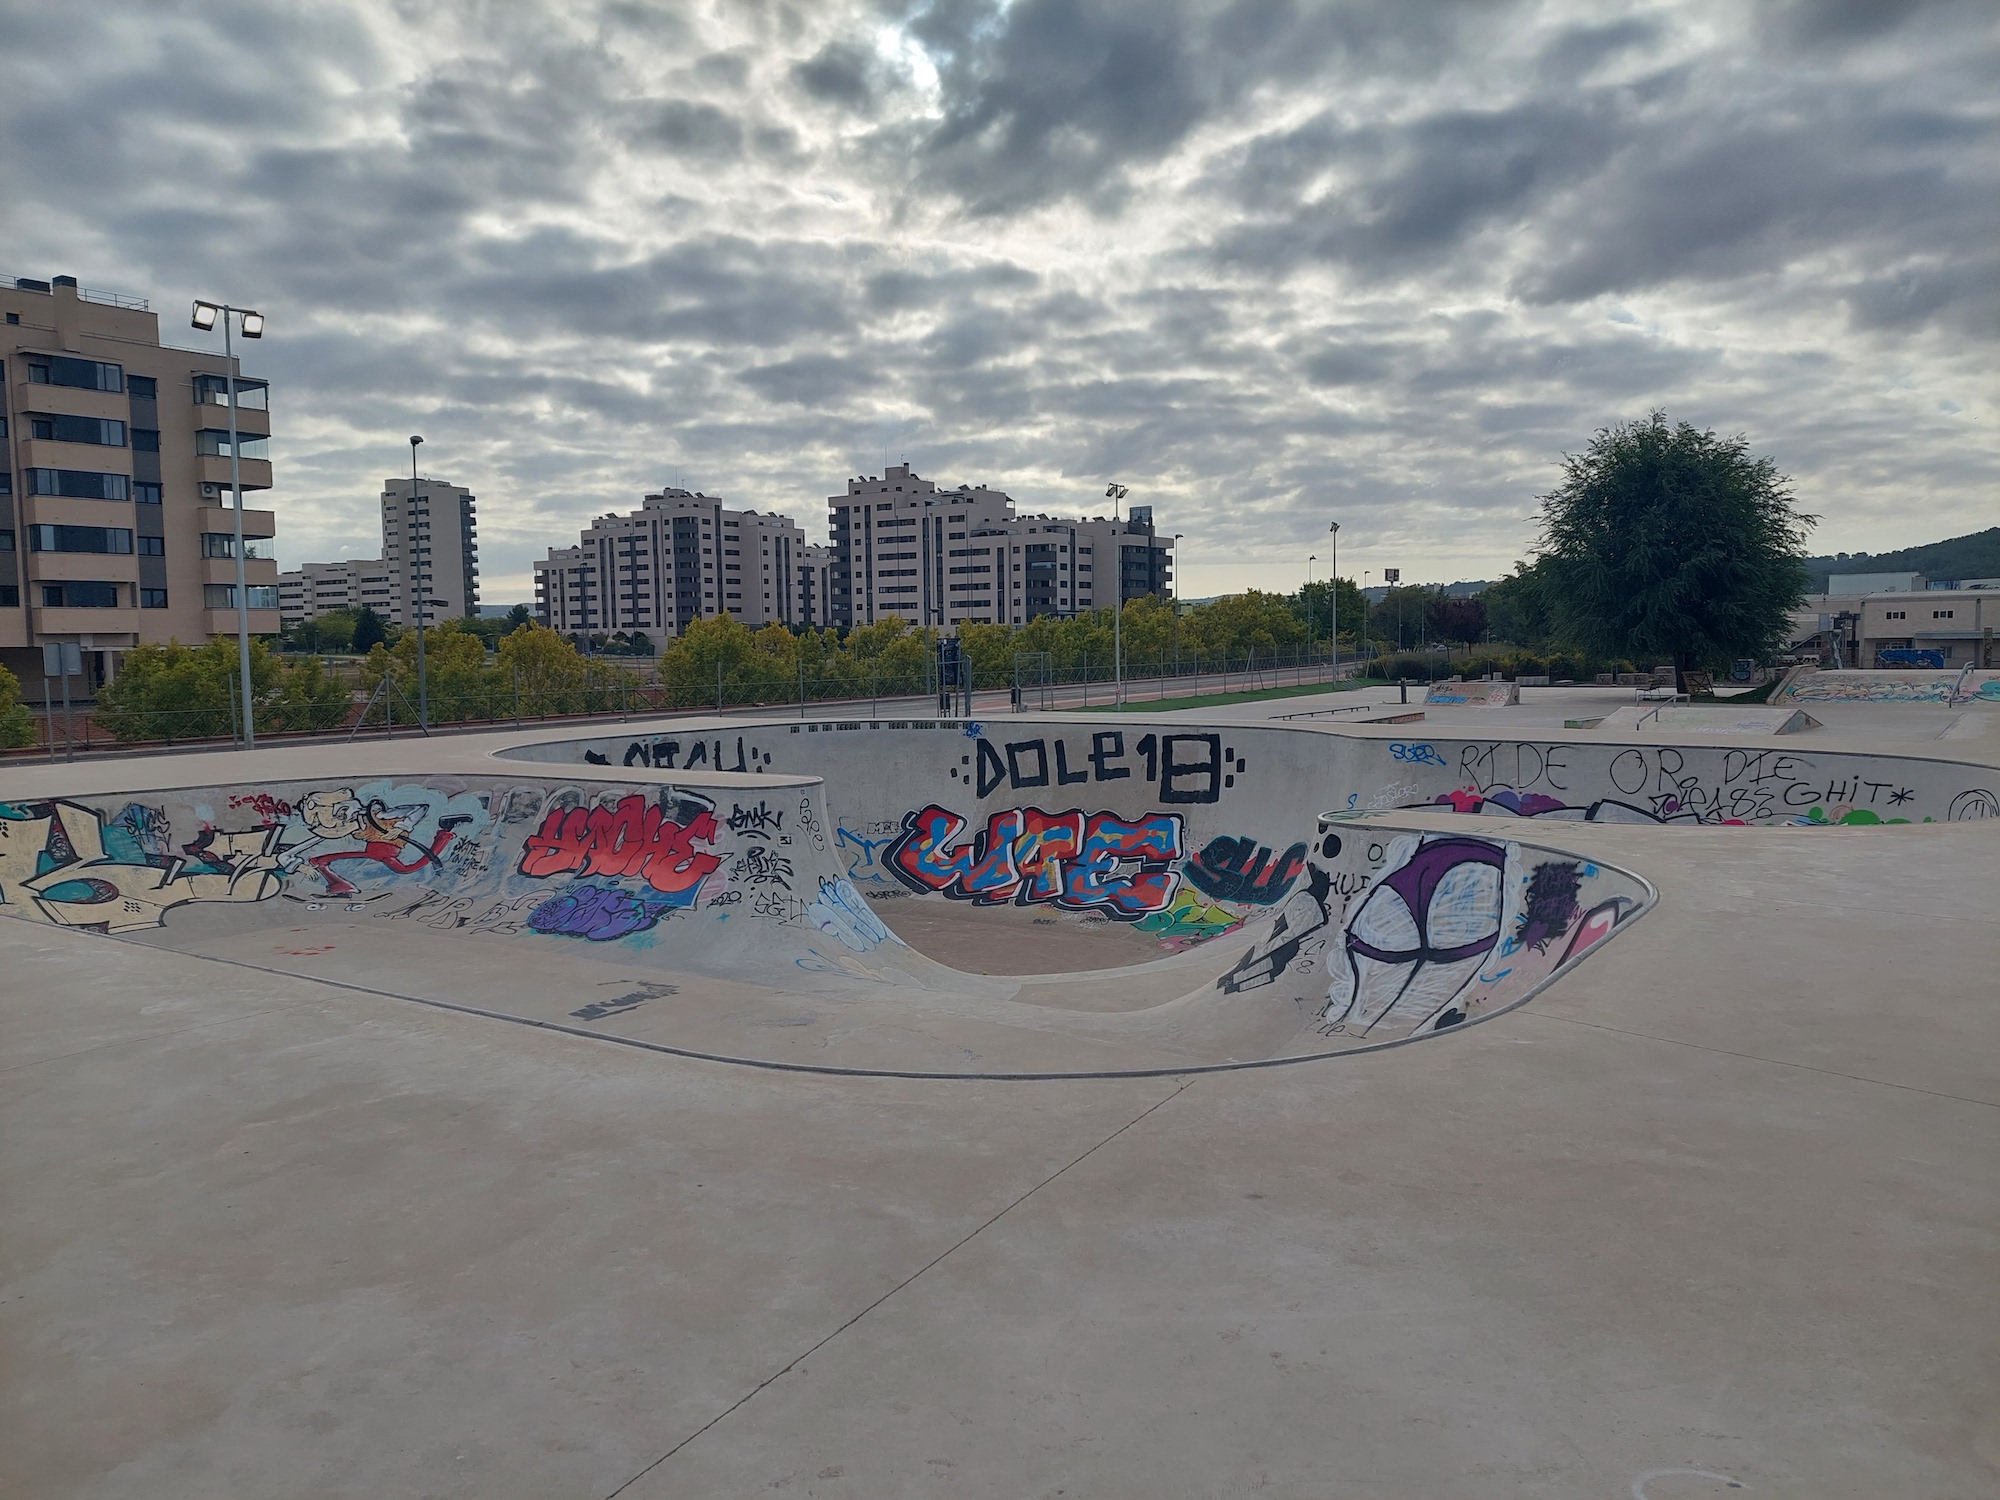 La Garena Skatepark